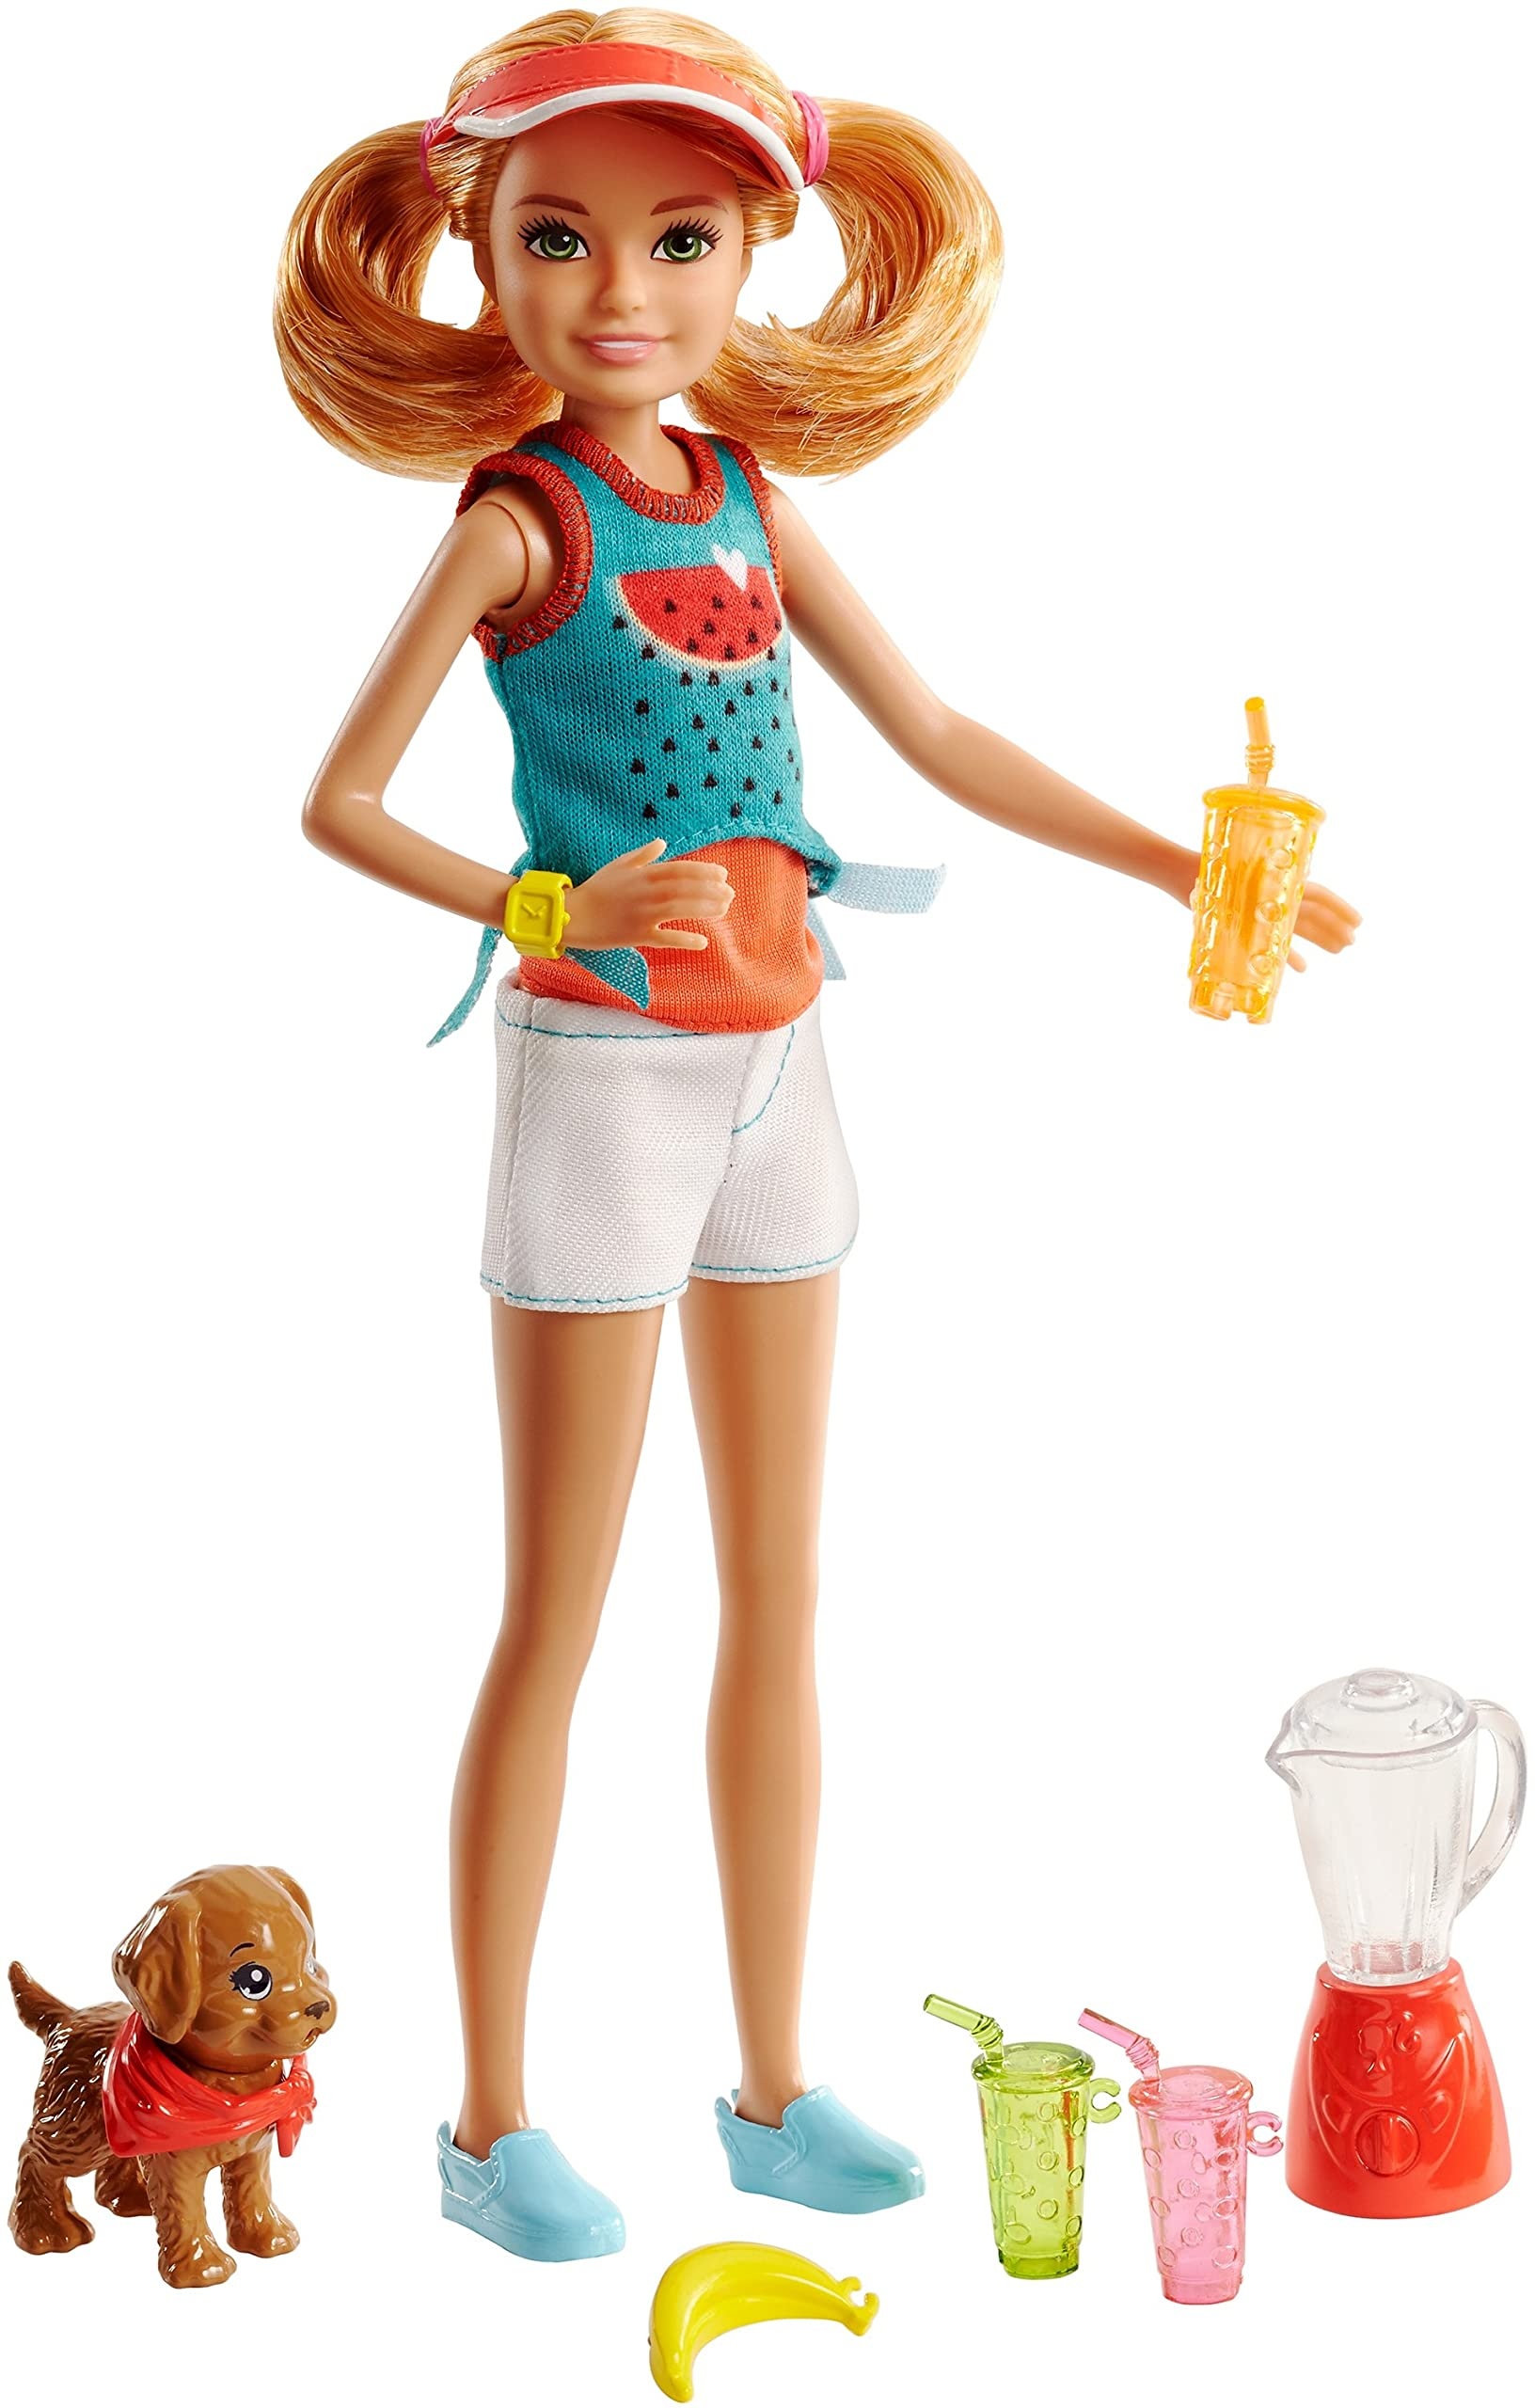 Mattel Barbie FHP63 "Cooking und Baking" Stacie Puppe und Zubehör (Neu differenzbesteuert)